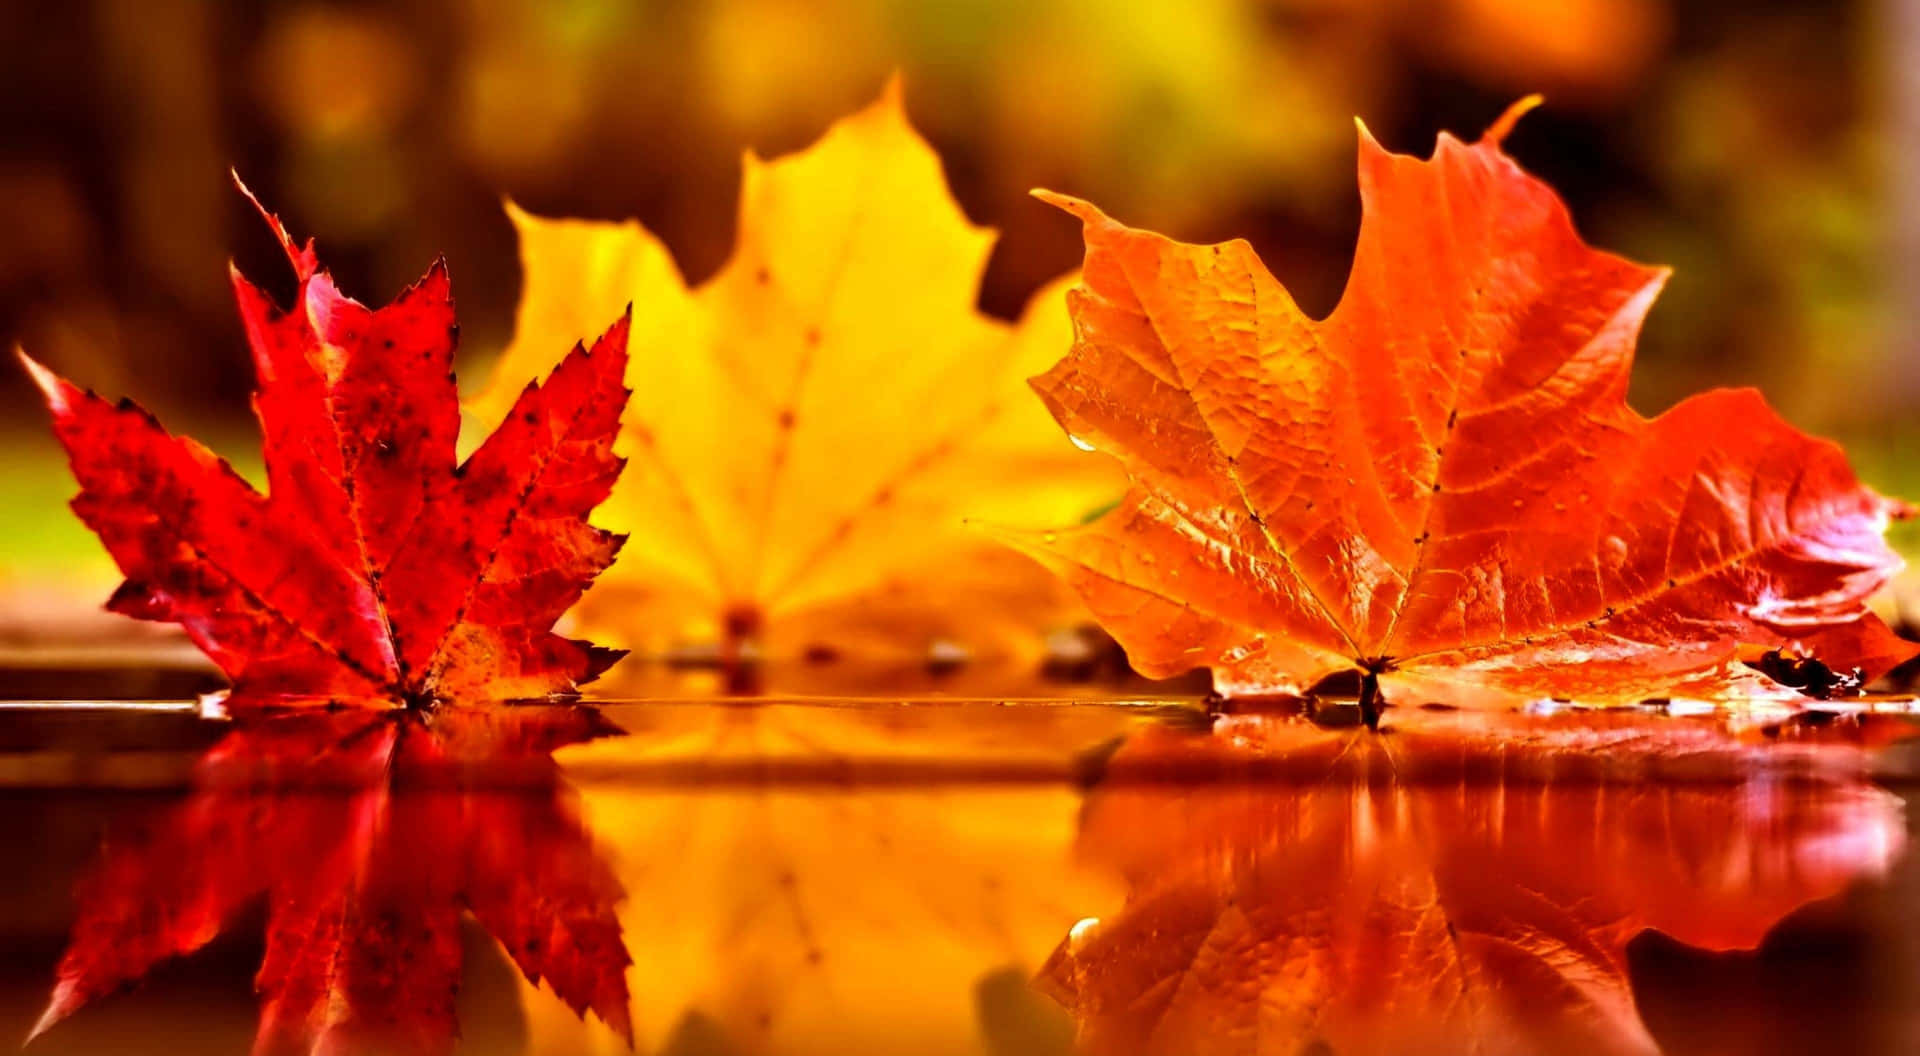 Enjoying the Beauty of an Autumn Day Wallpaper